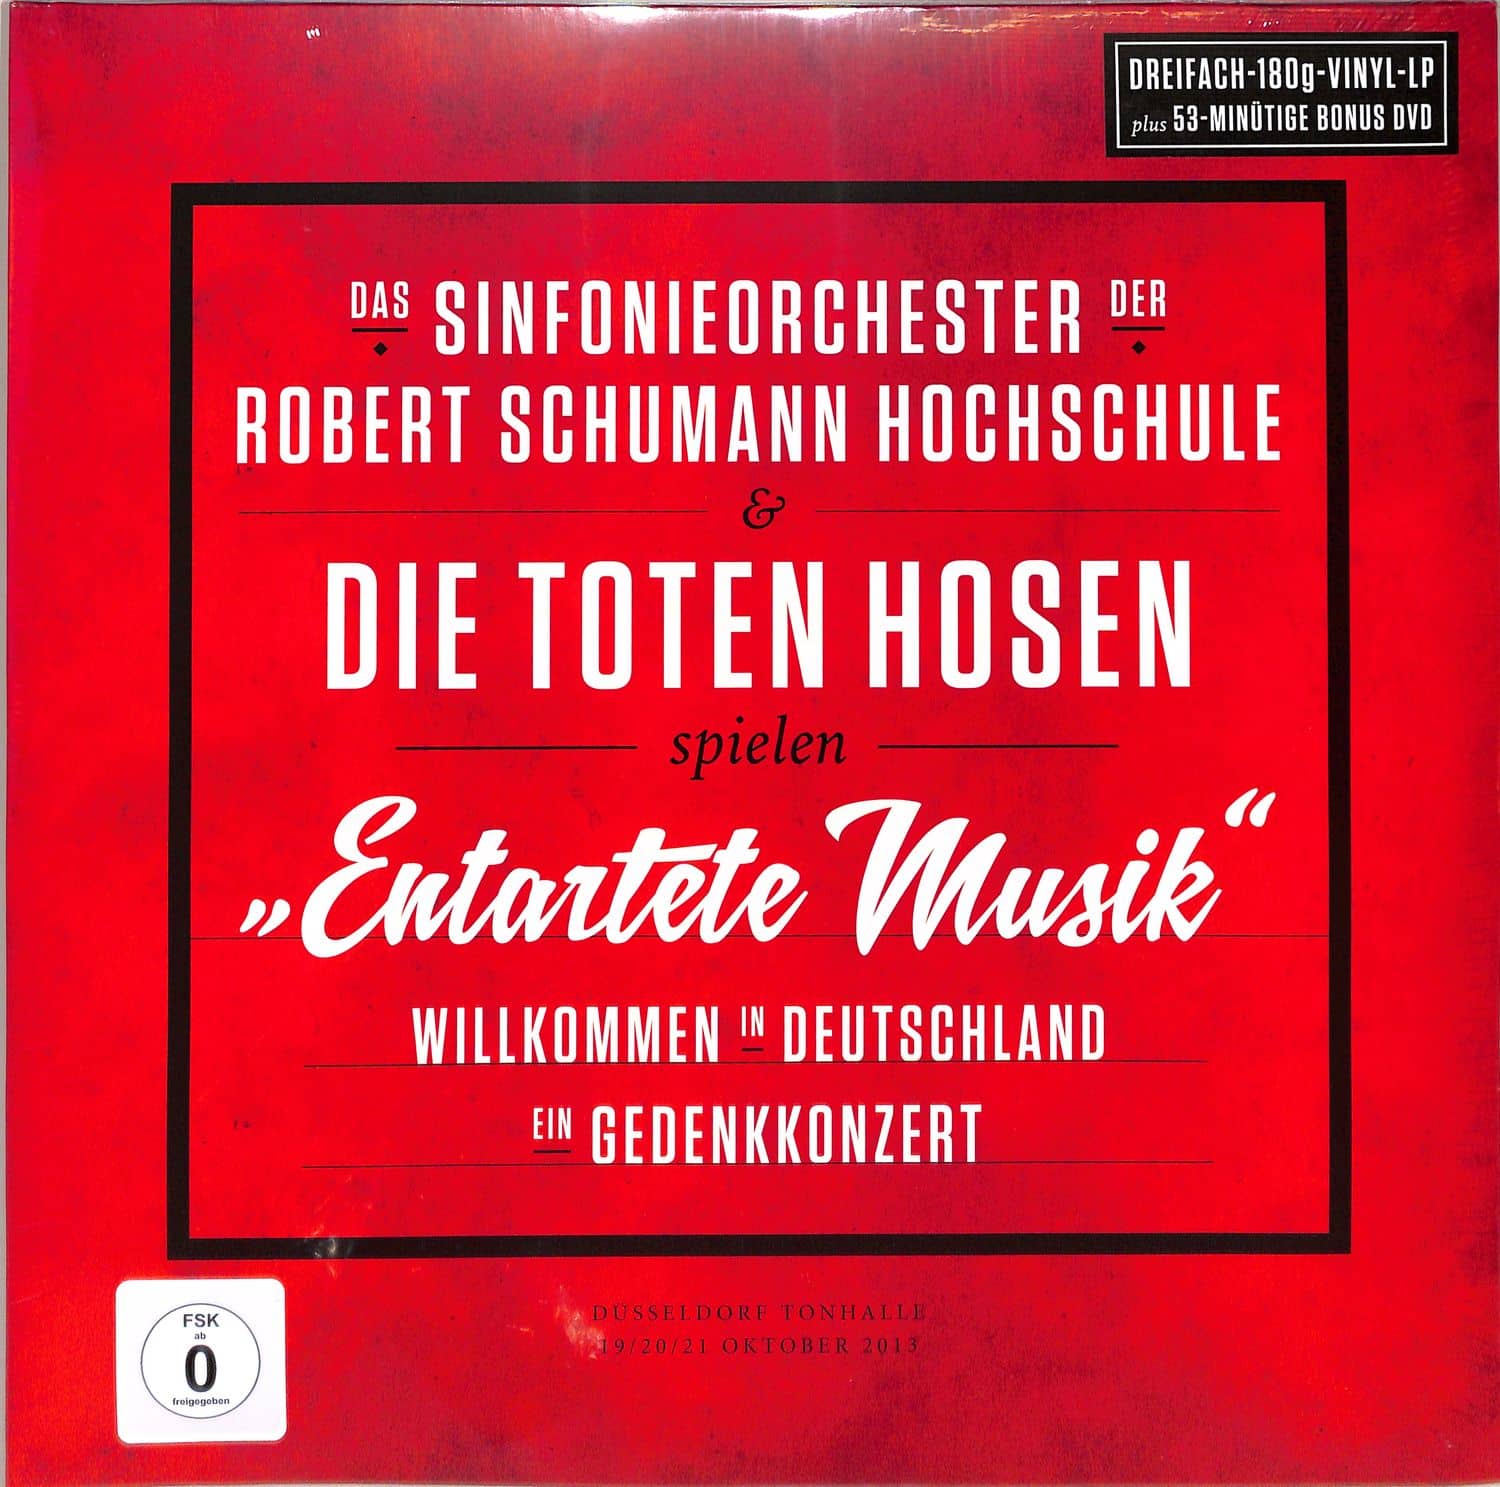 Die Toten Hosen & Sinfonieorch.der R.Schumann Hochschule - ENARTETE MUSIK WILLKOMMEN IN DEUTSCHLAND-EIN GED 